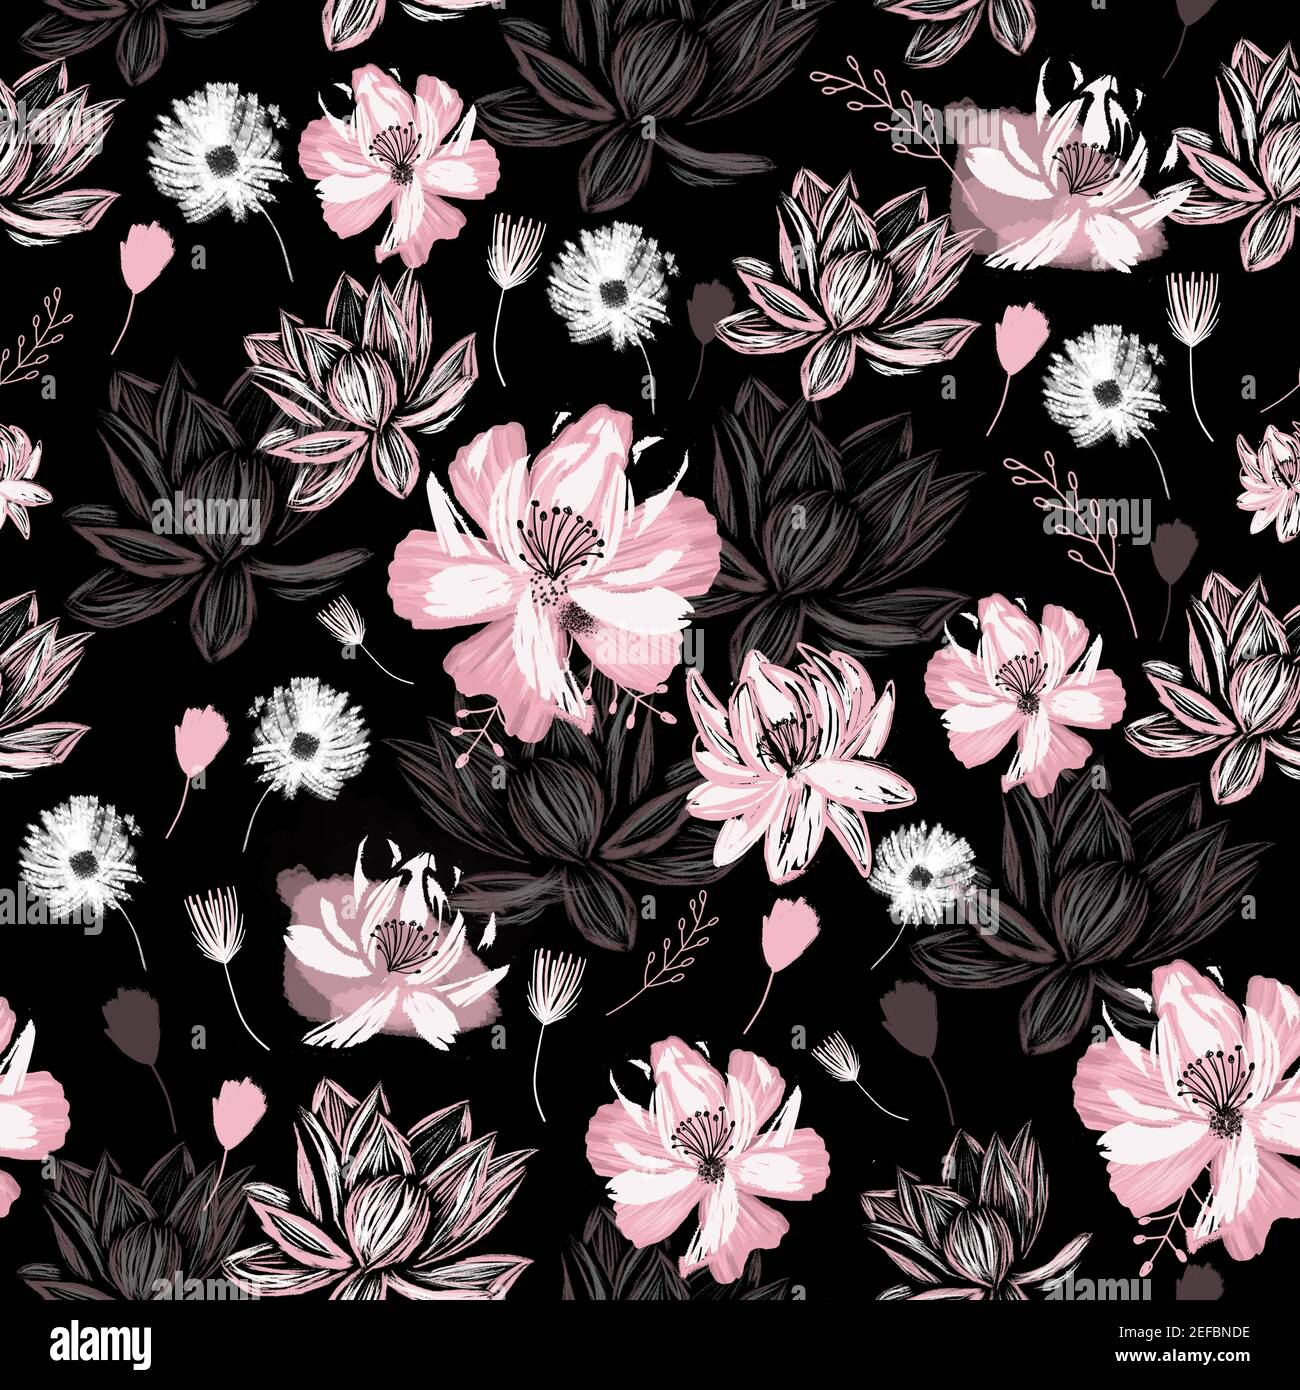 Nahtlose Blumenmuster auf einem dunklen Hintergrund mit rosa und weißen Blumen. Garten Blumen Hintergrund. Oberflächengestaltung für Stoffe, Verpackung, Verpackung p Stockfoto